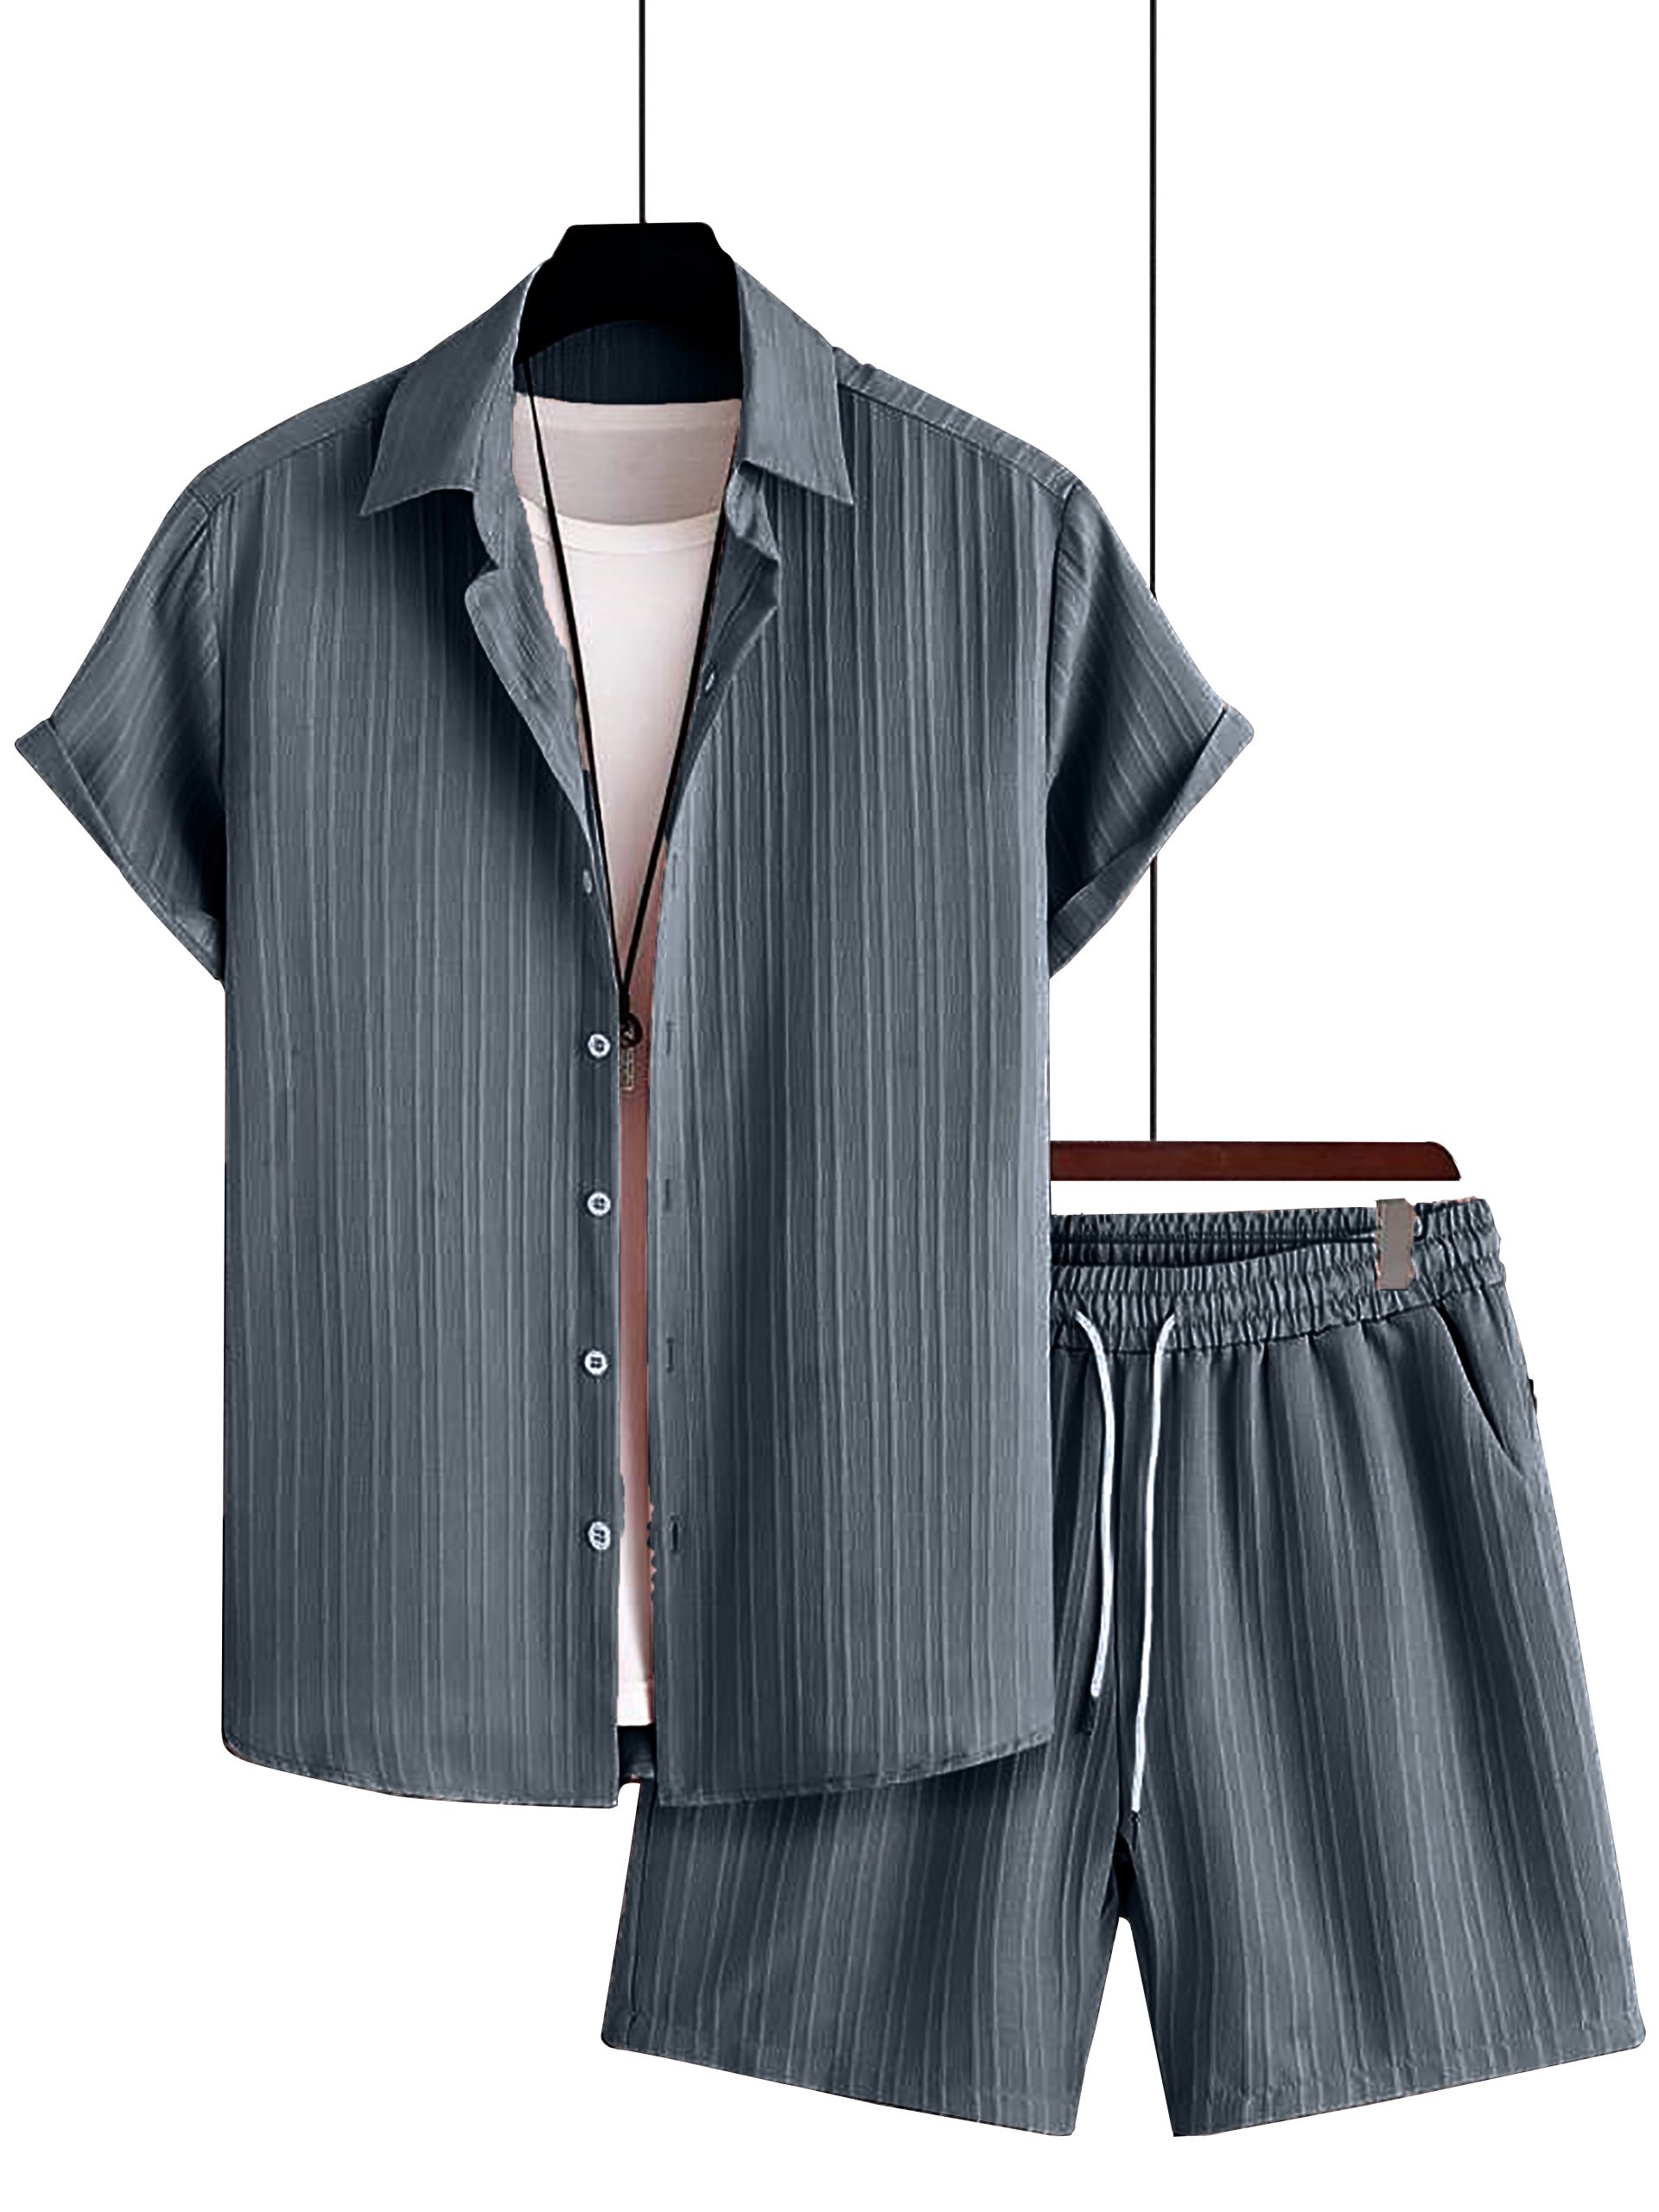 Men's Pajamas Set - Night Suits, Sleepwear, and Loungewear | PajamaTribe –  Pajama Tribe